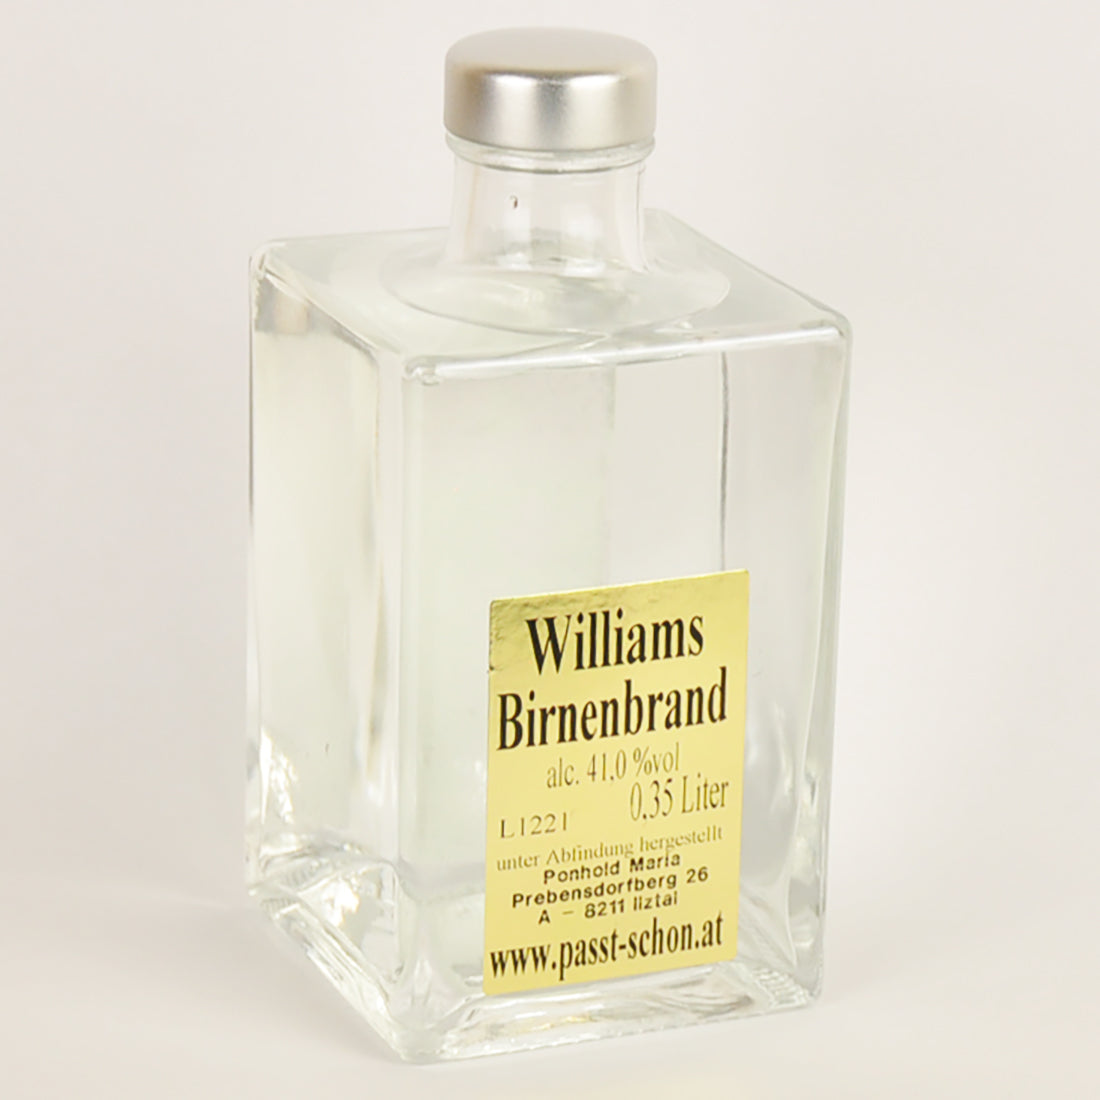 Williams Birnenbrand - №4 - Flasche